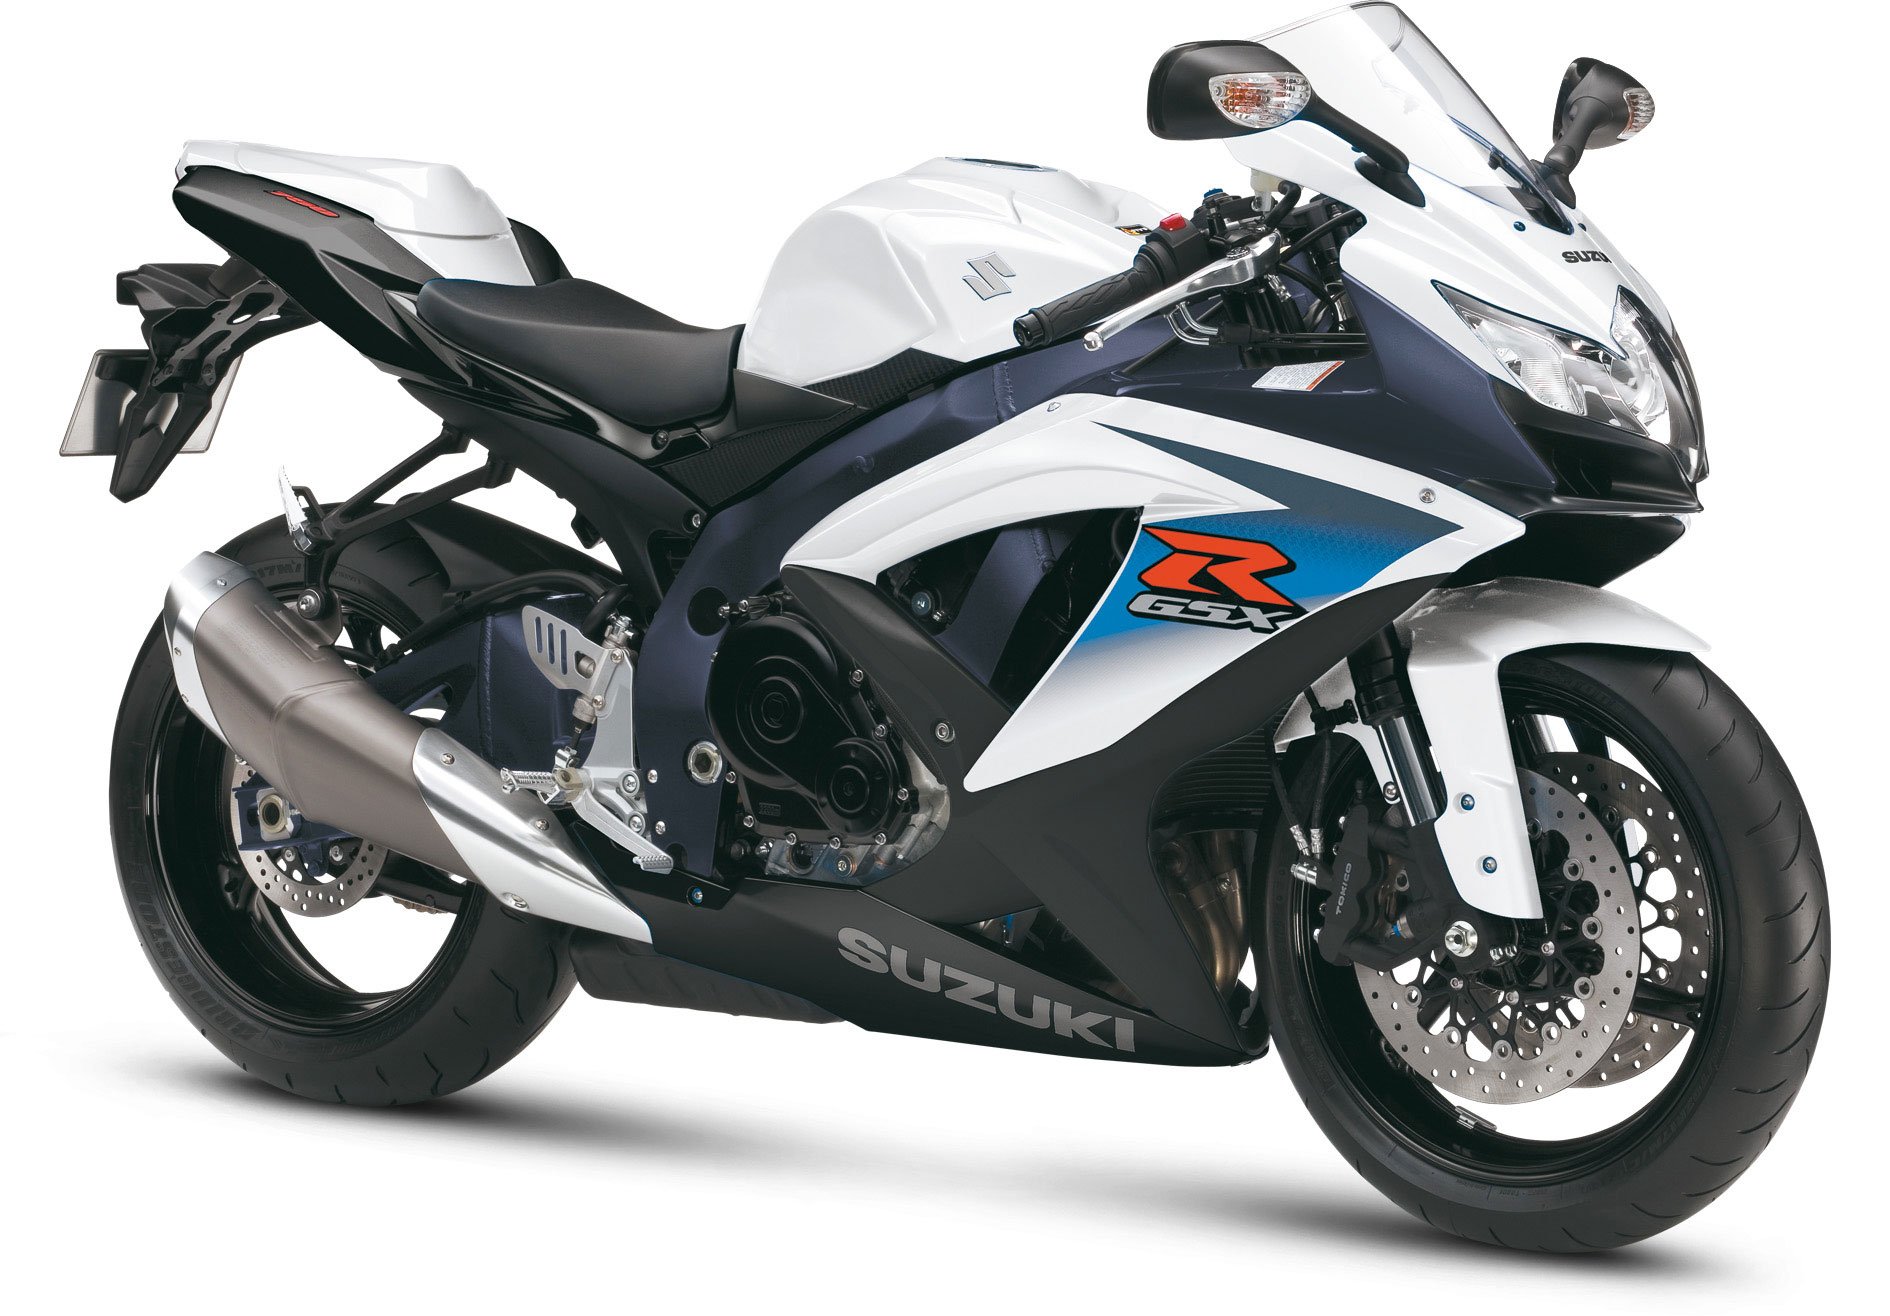 2010, Suzuki, Gsx r750, Motorcycles Wallpaper